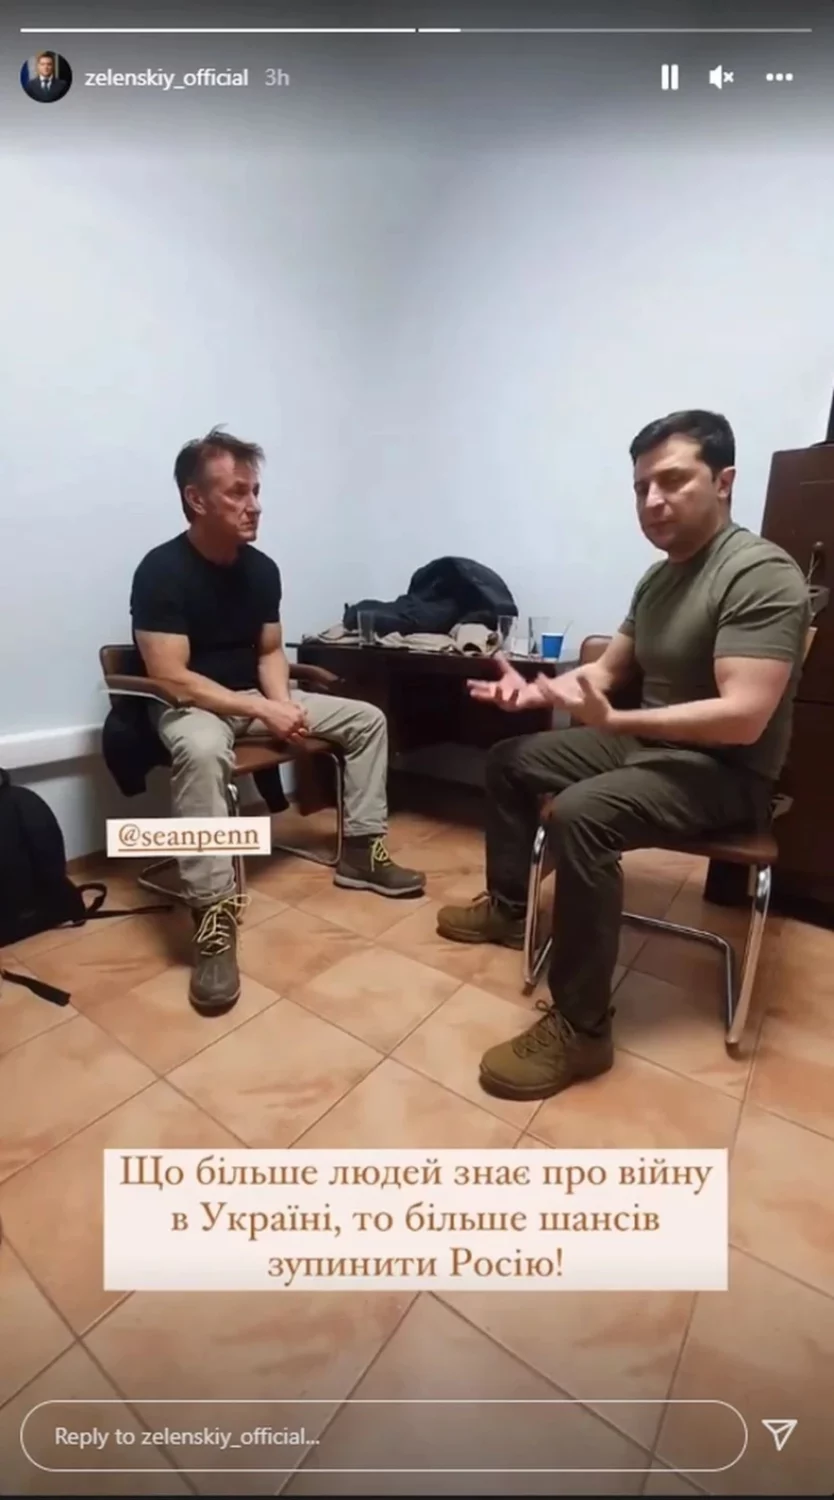 Σον Πεν: Βρίσκεται στην Ουκρανία για να γυρίσει ντοκιμαντέρ για τη ρωσική εισβολή